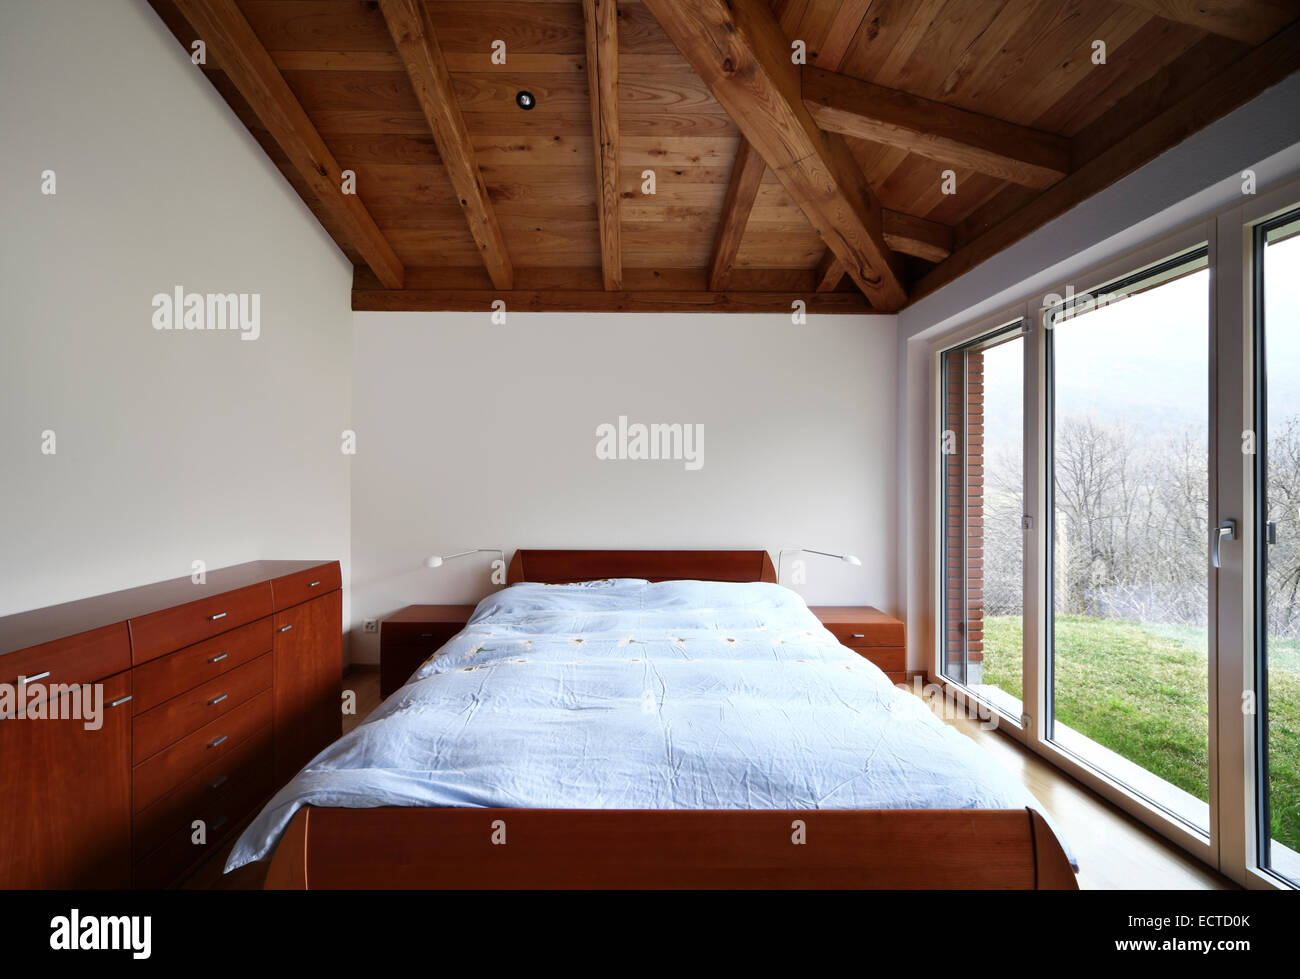 Dormitorio de madera techo de madera interior vacío nadie Foto de stock